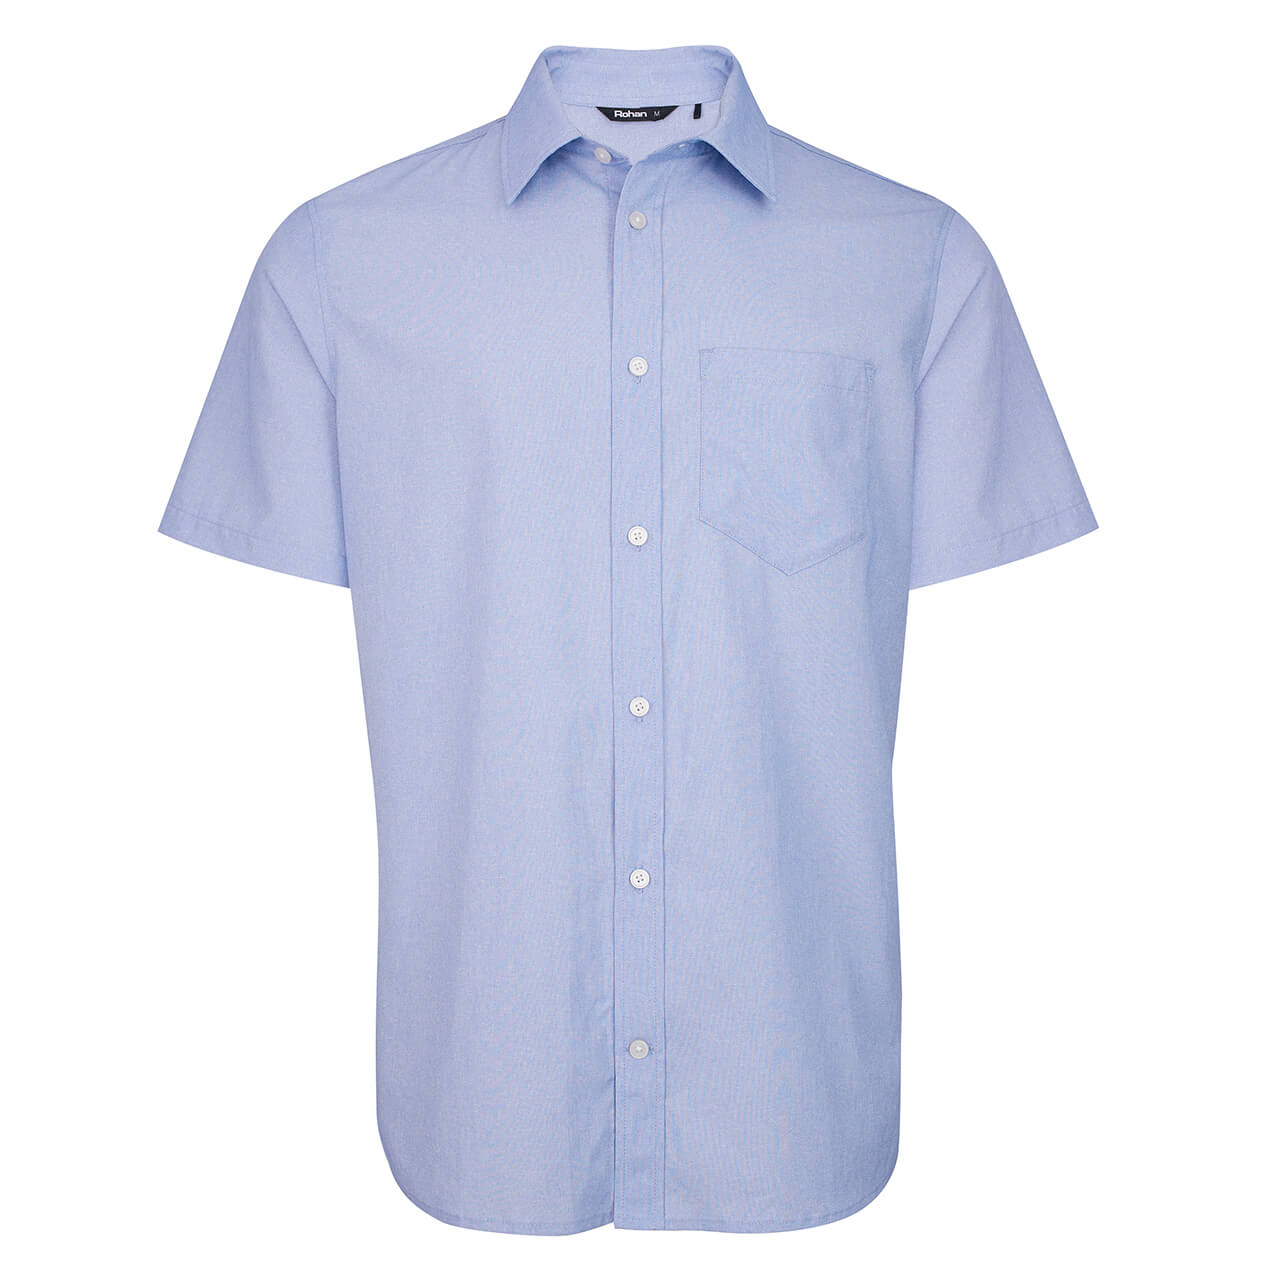 Men’s Finchley Lightweight Short Sleeve Shirt